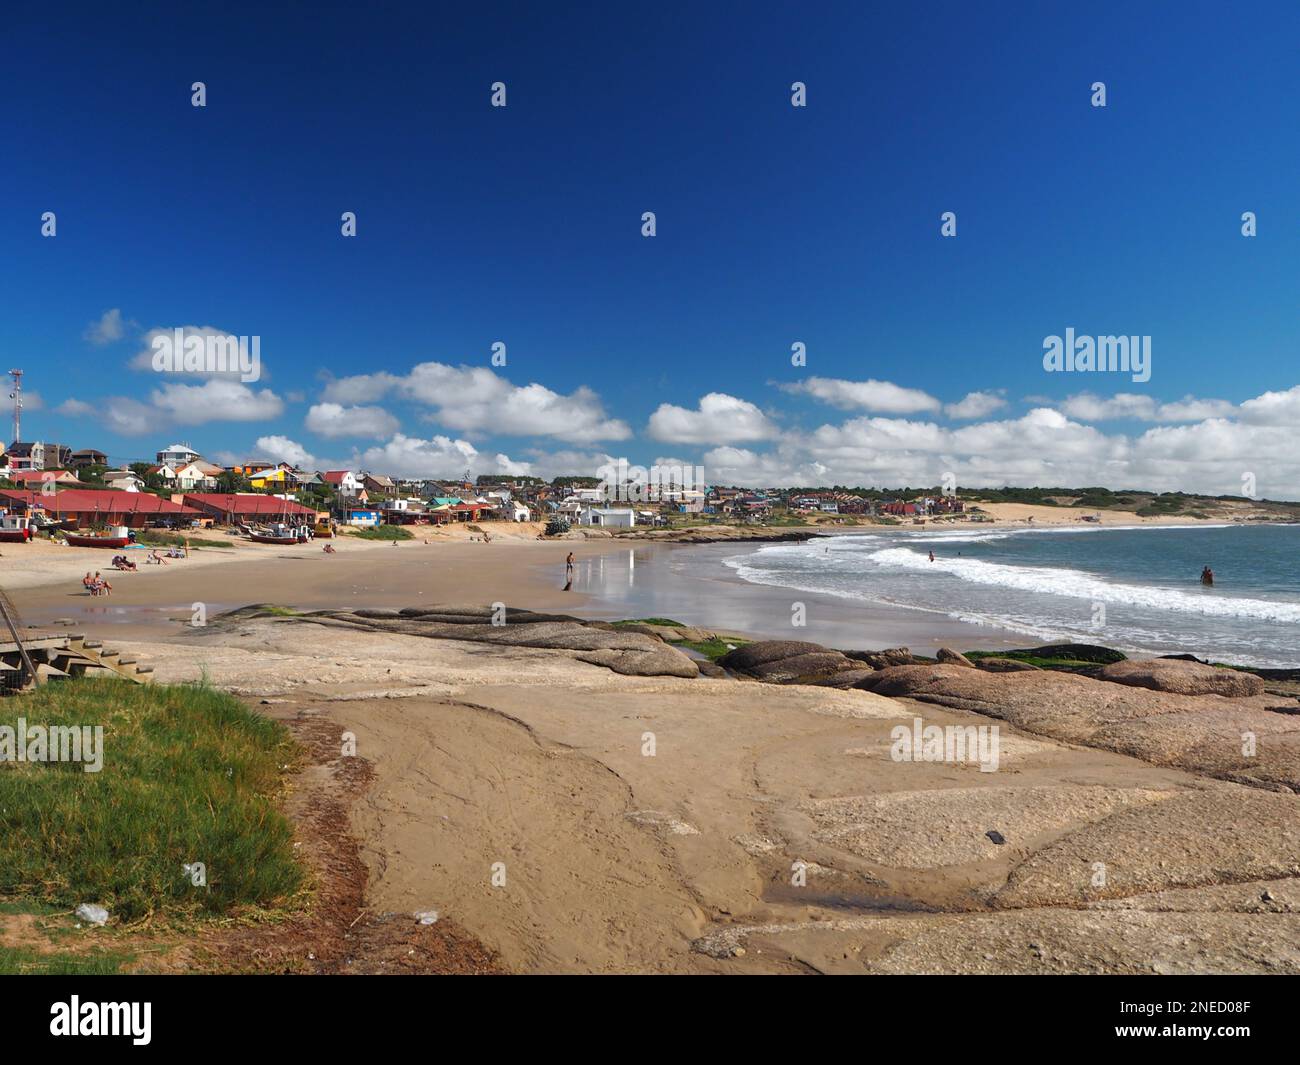 Punta del Diablo beach, Uruguay Stock Photo